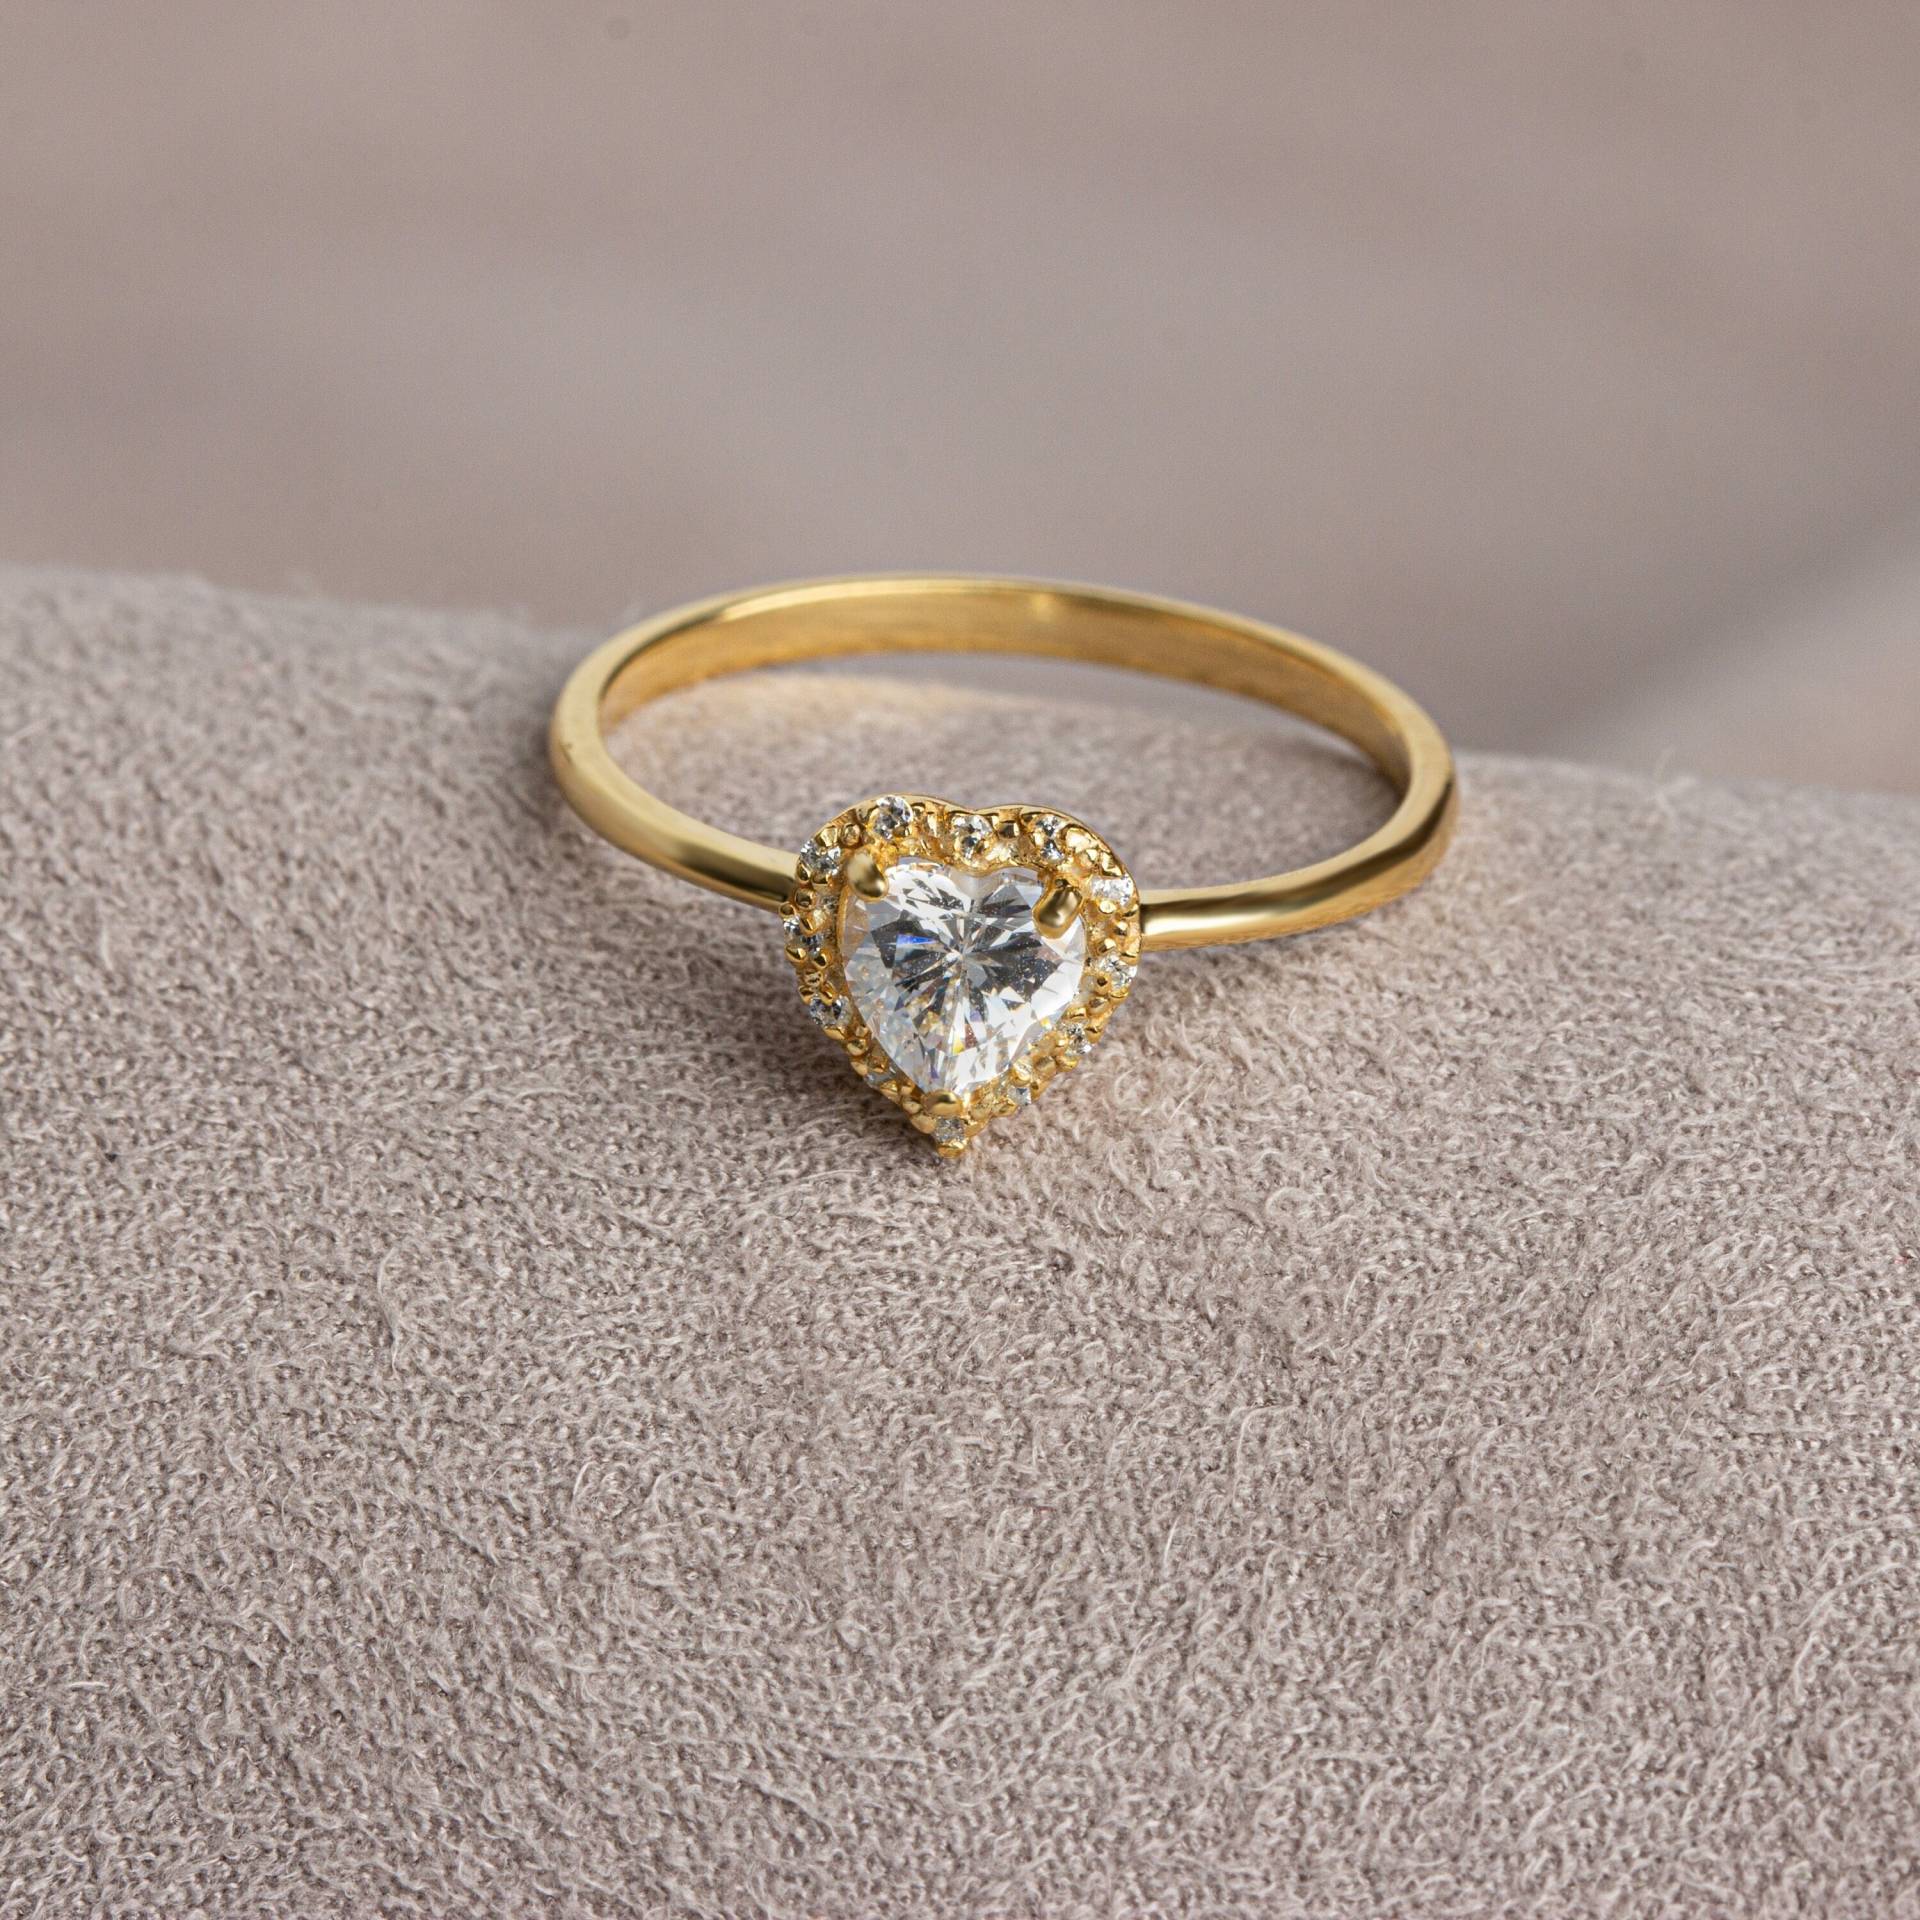 Weißer Topas Ring - 14K Solid Gold Mit Echtem Diamant, Herz Design, Perfekt Für Jubiläum, Weihnachten, Muttertag & Brautjungfer Geschenke von QueenjewelryTurkey